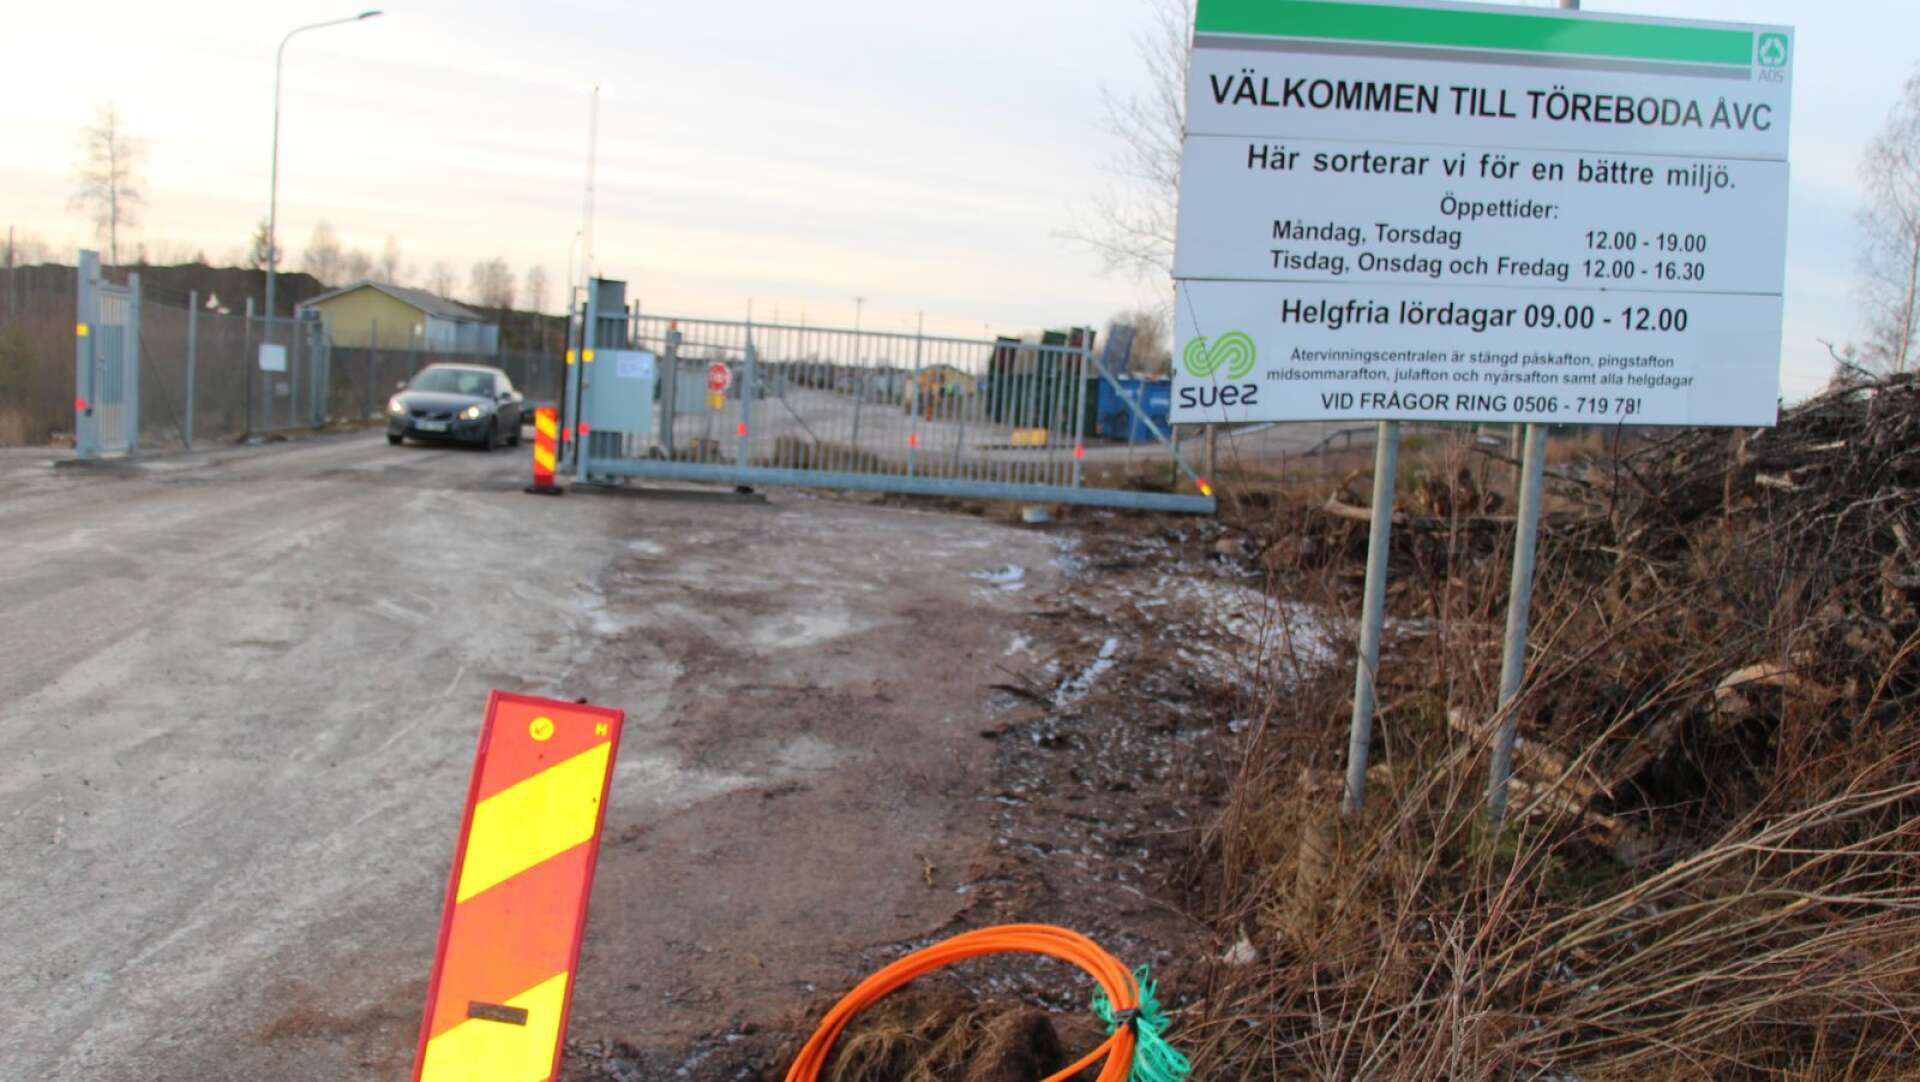 Borrebodas återvinningscentral får nya och försämrade öppettider för företagare vid månadsskiftet.